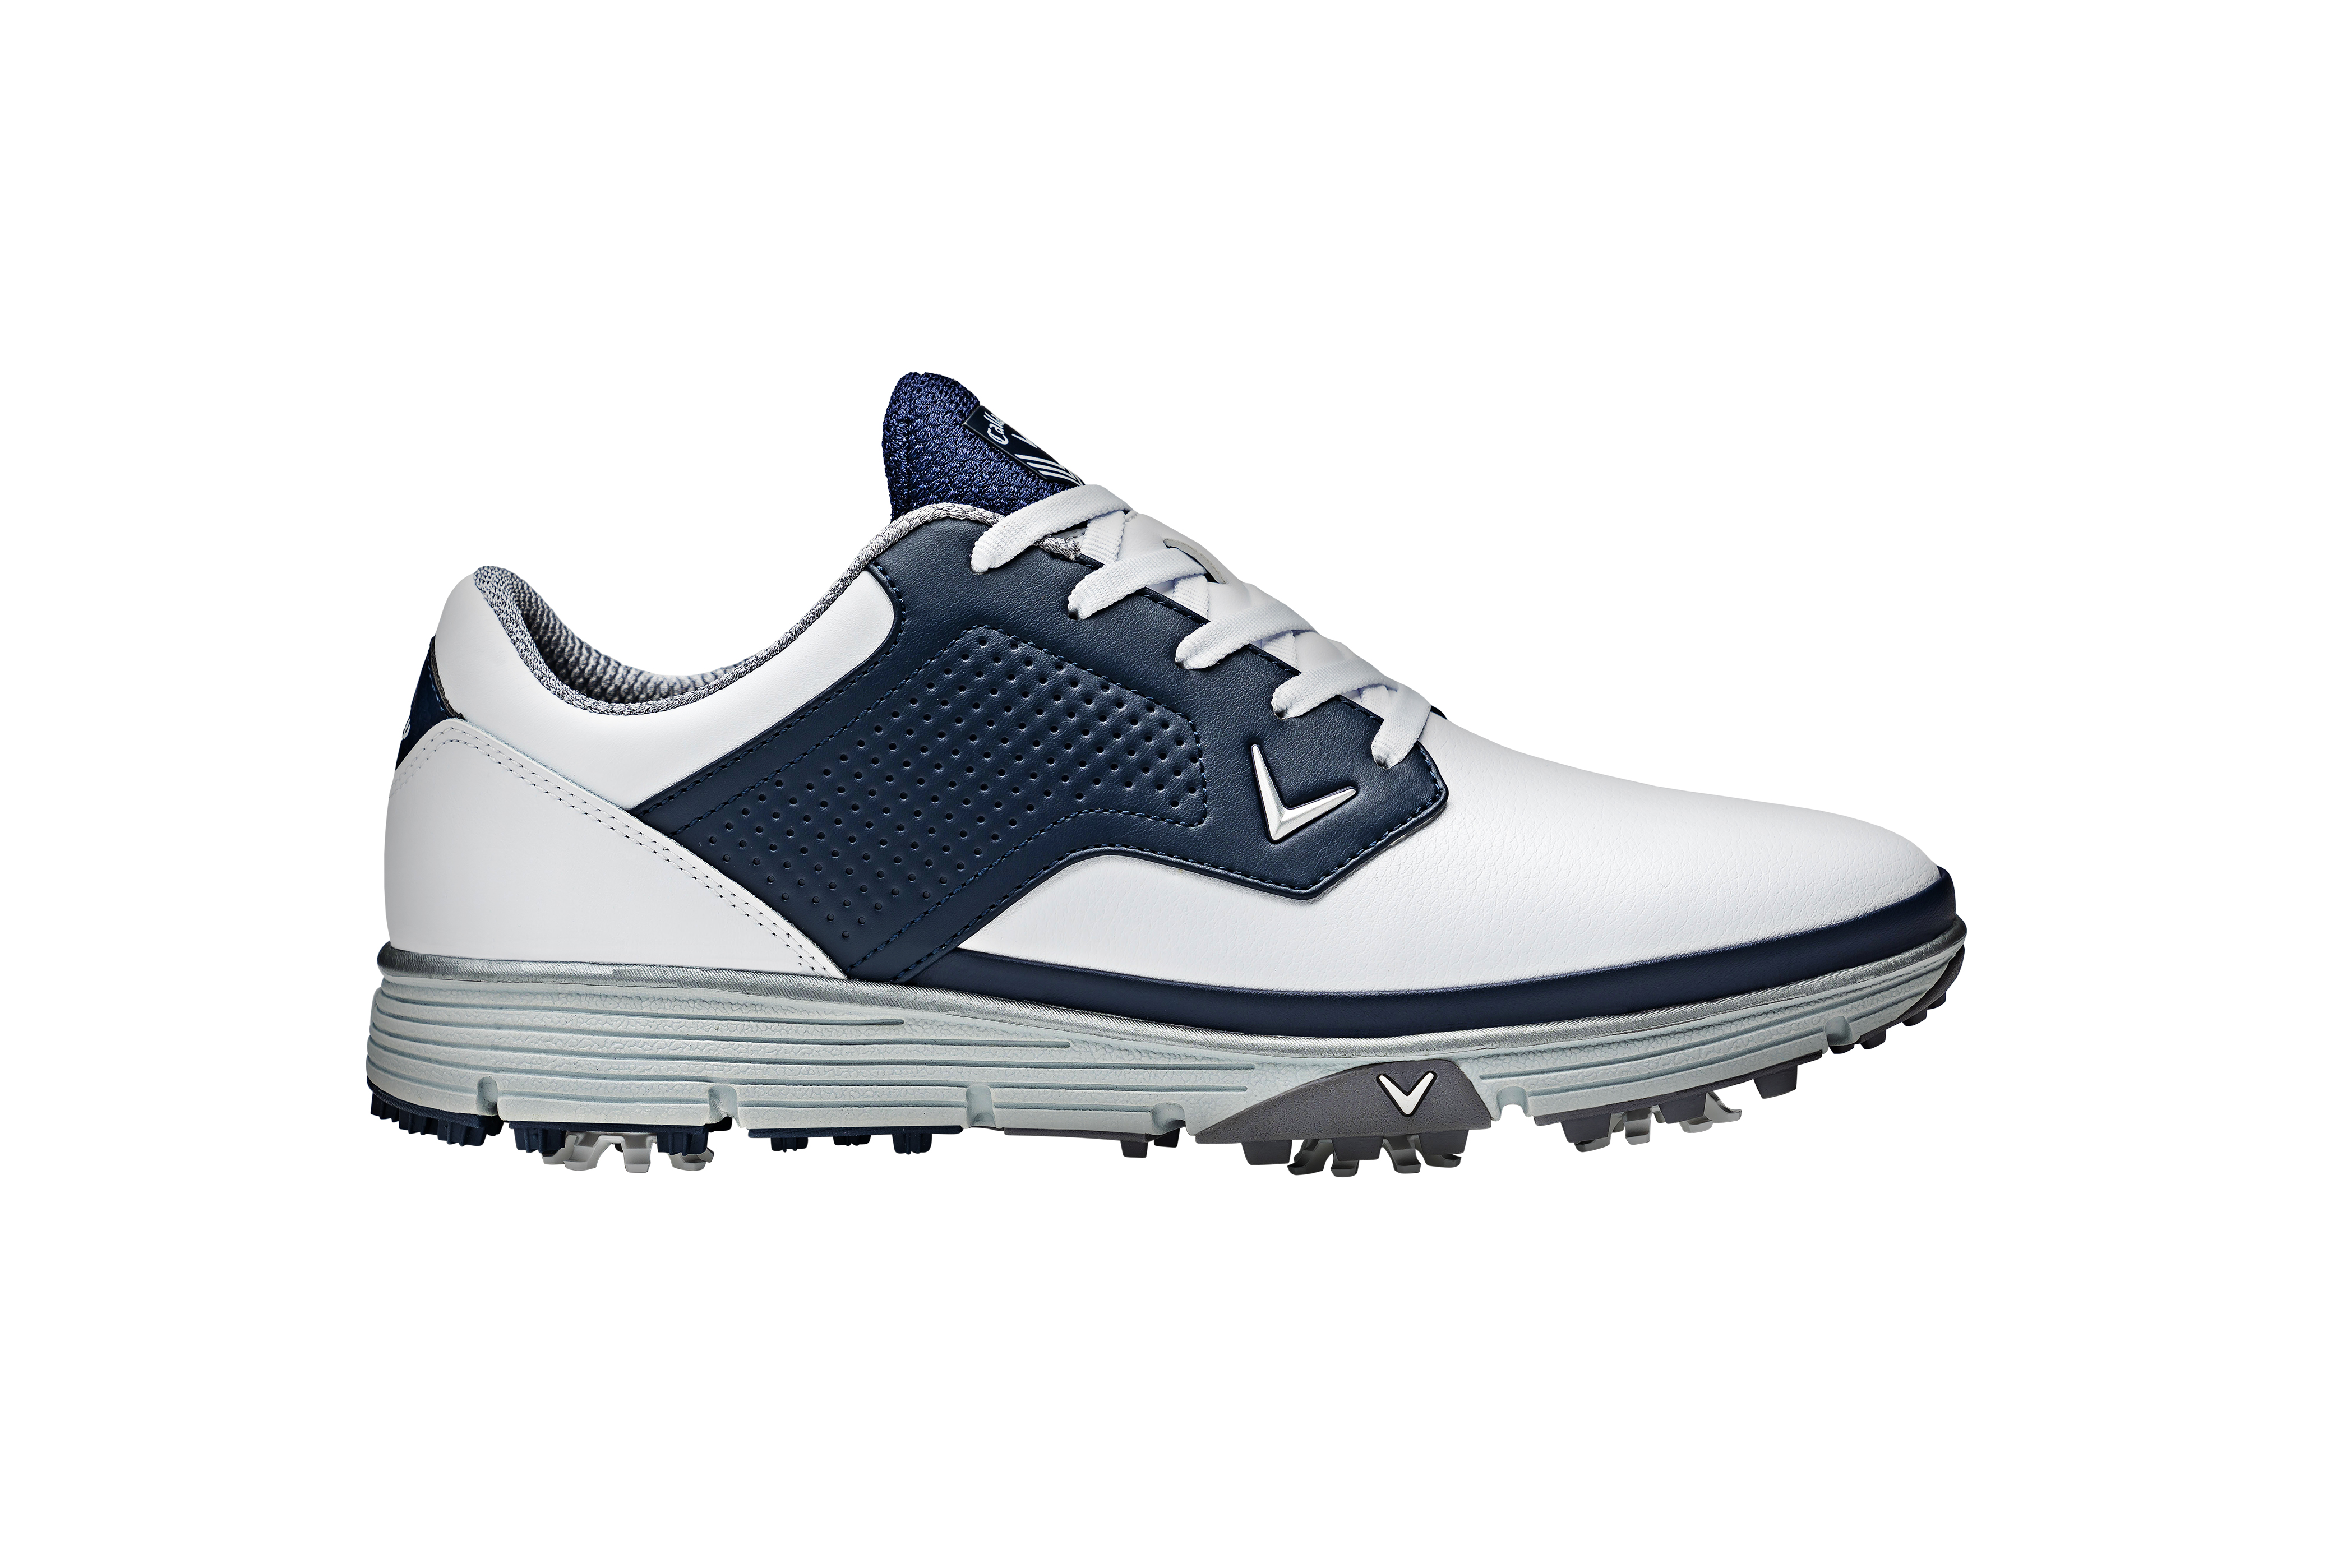 Callaway Mission pánské golfové boty, bílé/tmavě modré, vel. 7,5 UK